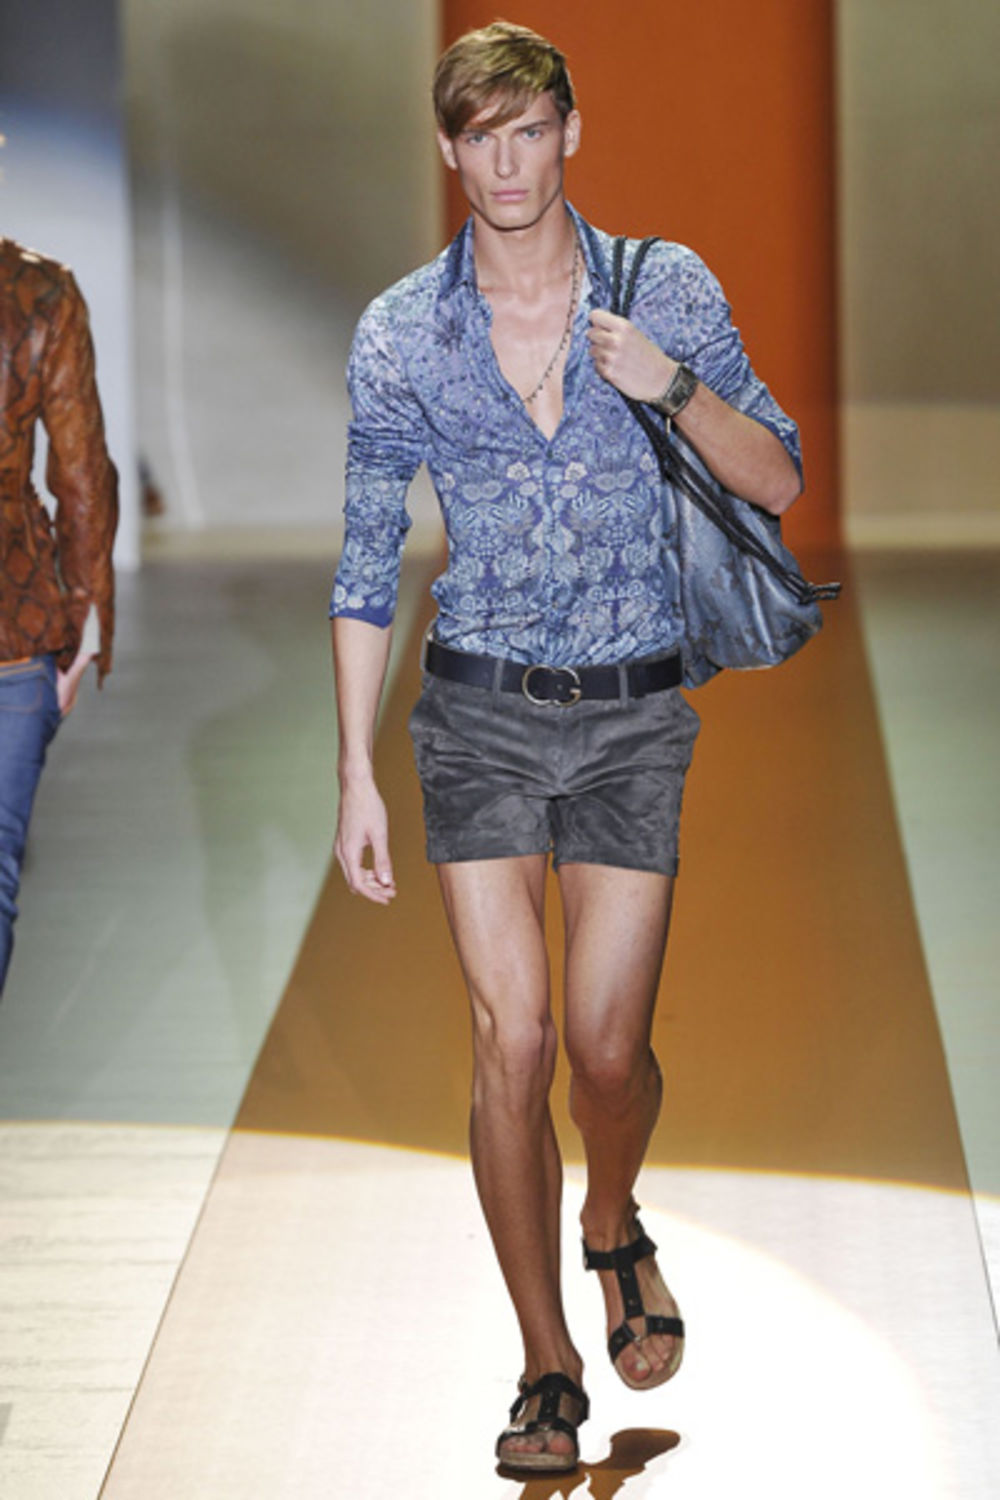 Trenutno najtraženiji i najplaćeniji srpski model, Nikola Jovanović, zaštitno je lice modne imperije Gucci.